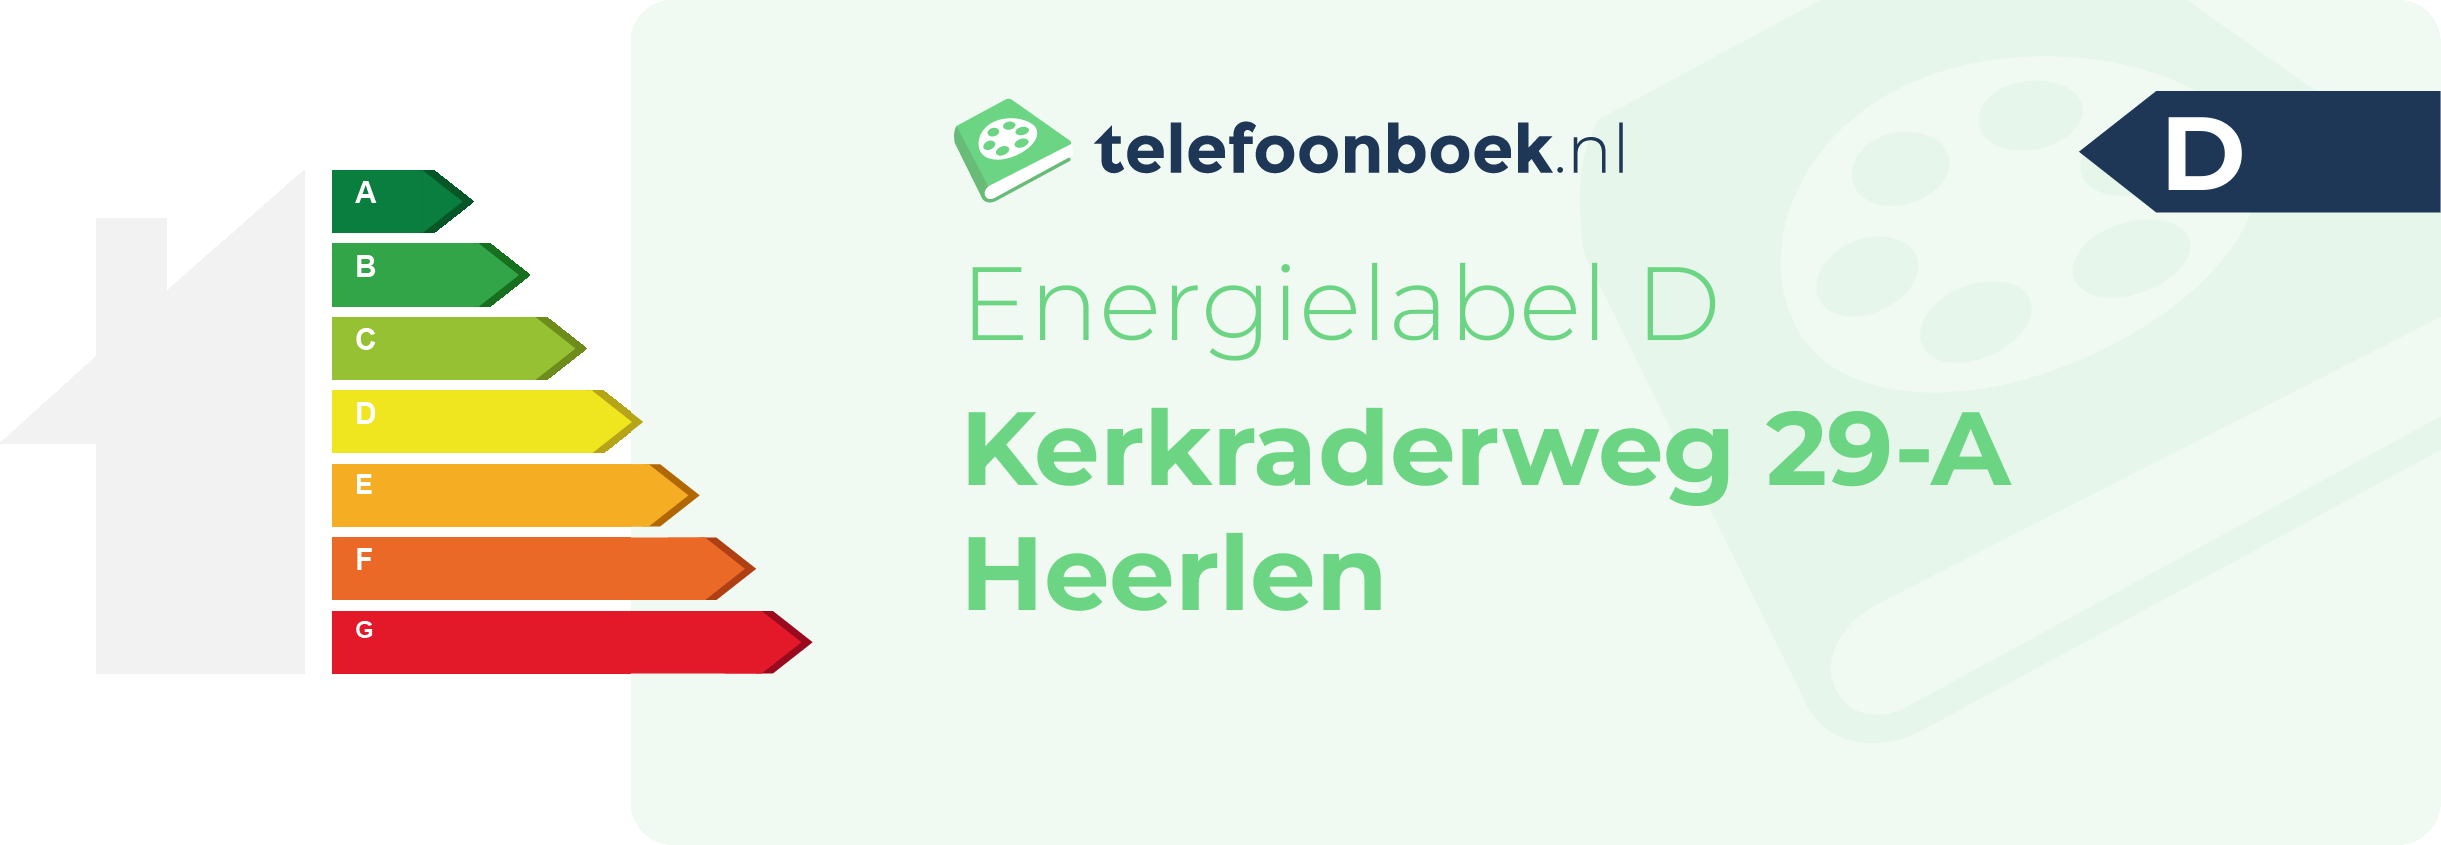 Energielabel Kerkraderweg 29-A Heerlen